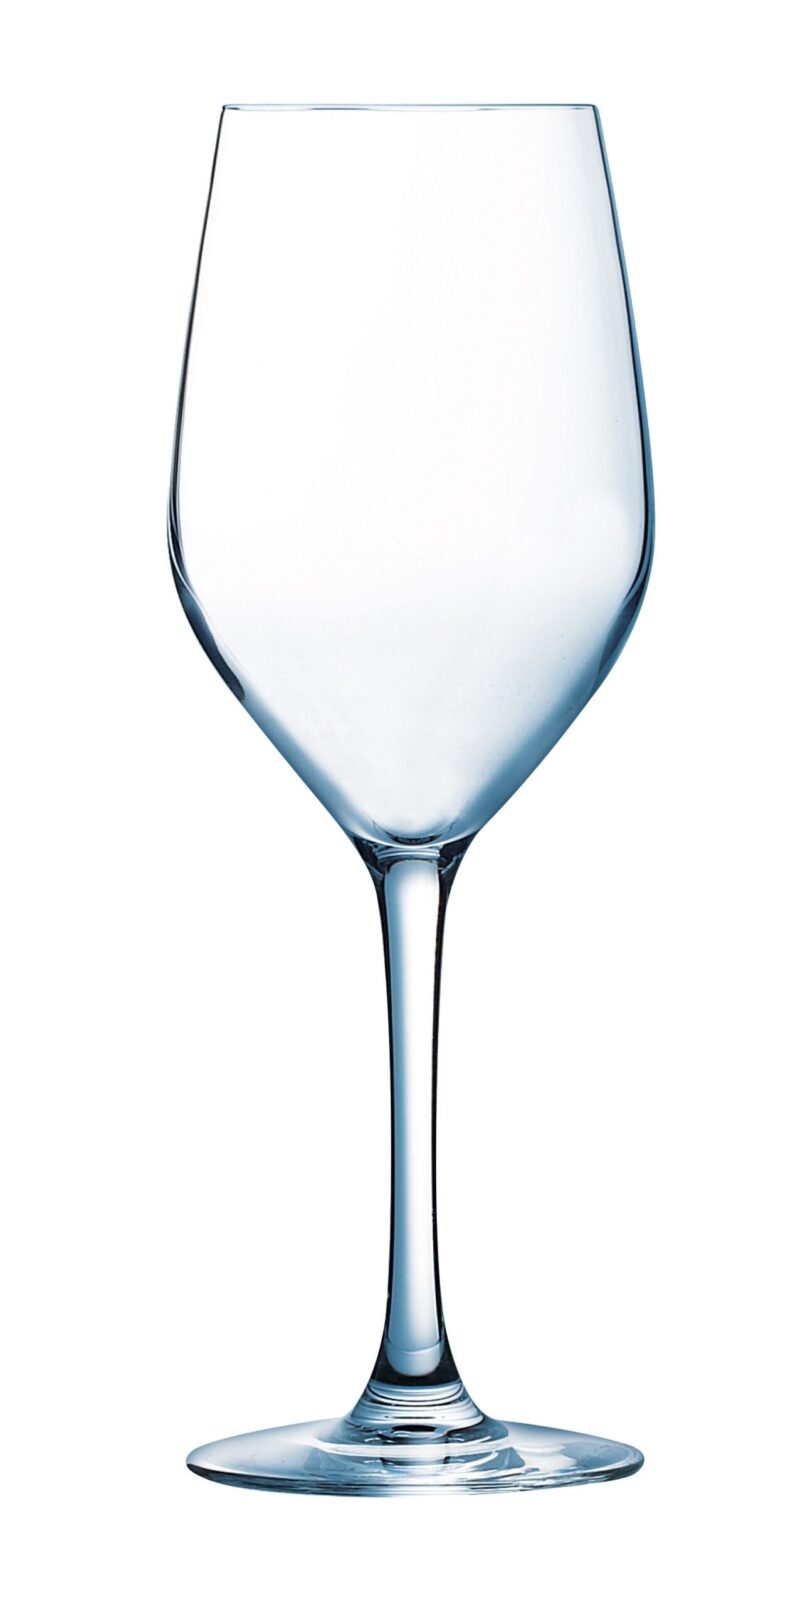 Mineral Wijnglas 27cl Horeca verkrijgbaar in de cash and carry afdeling bij Vanal Antwerpen Brecht.